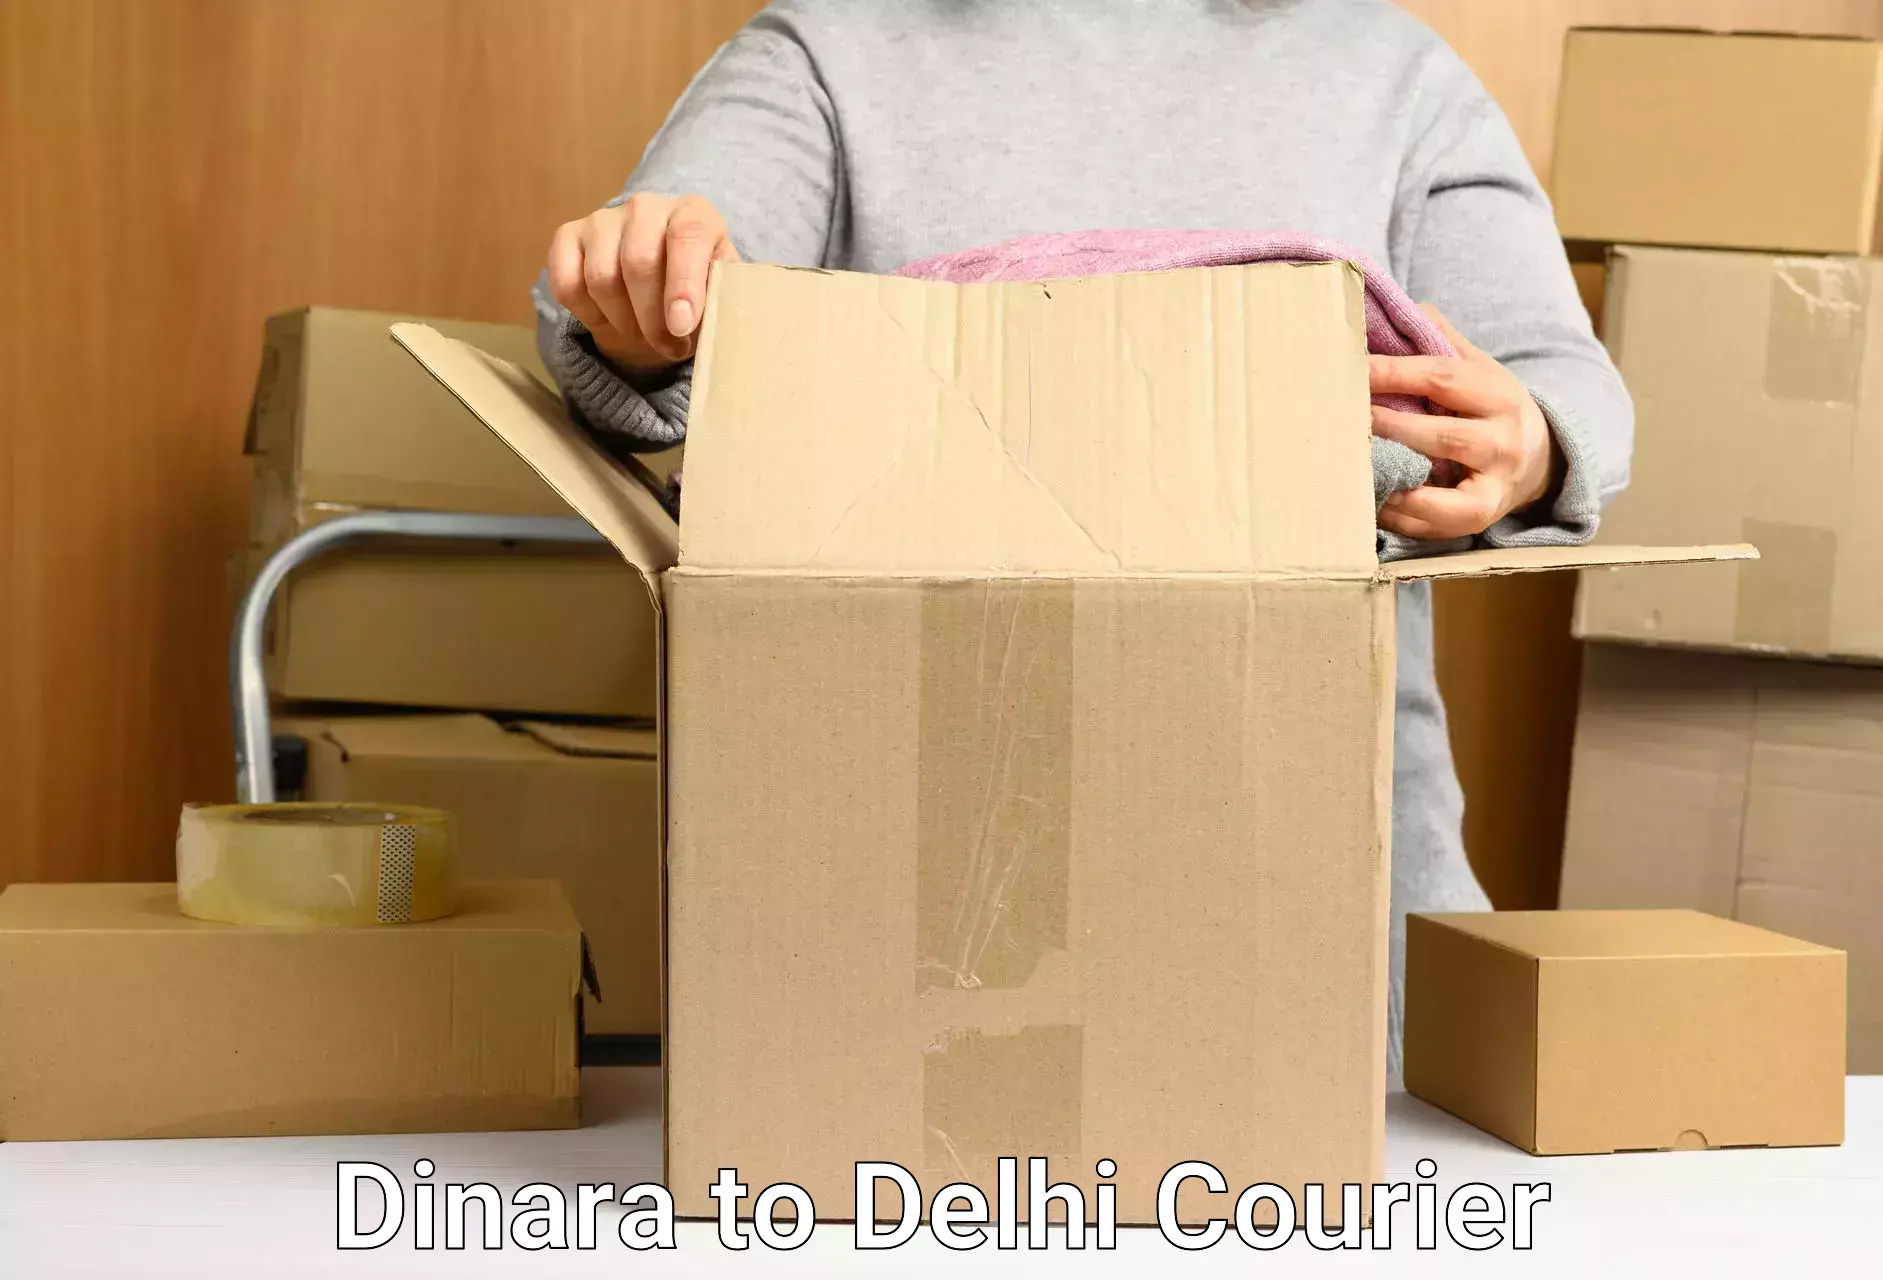 Cash on delivery service Dinara to IIT Delhi